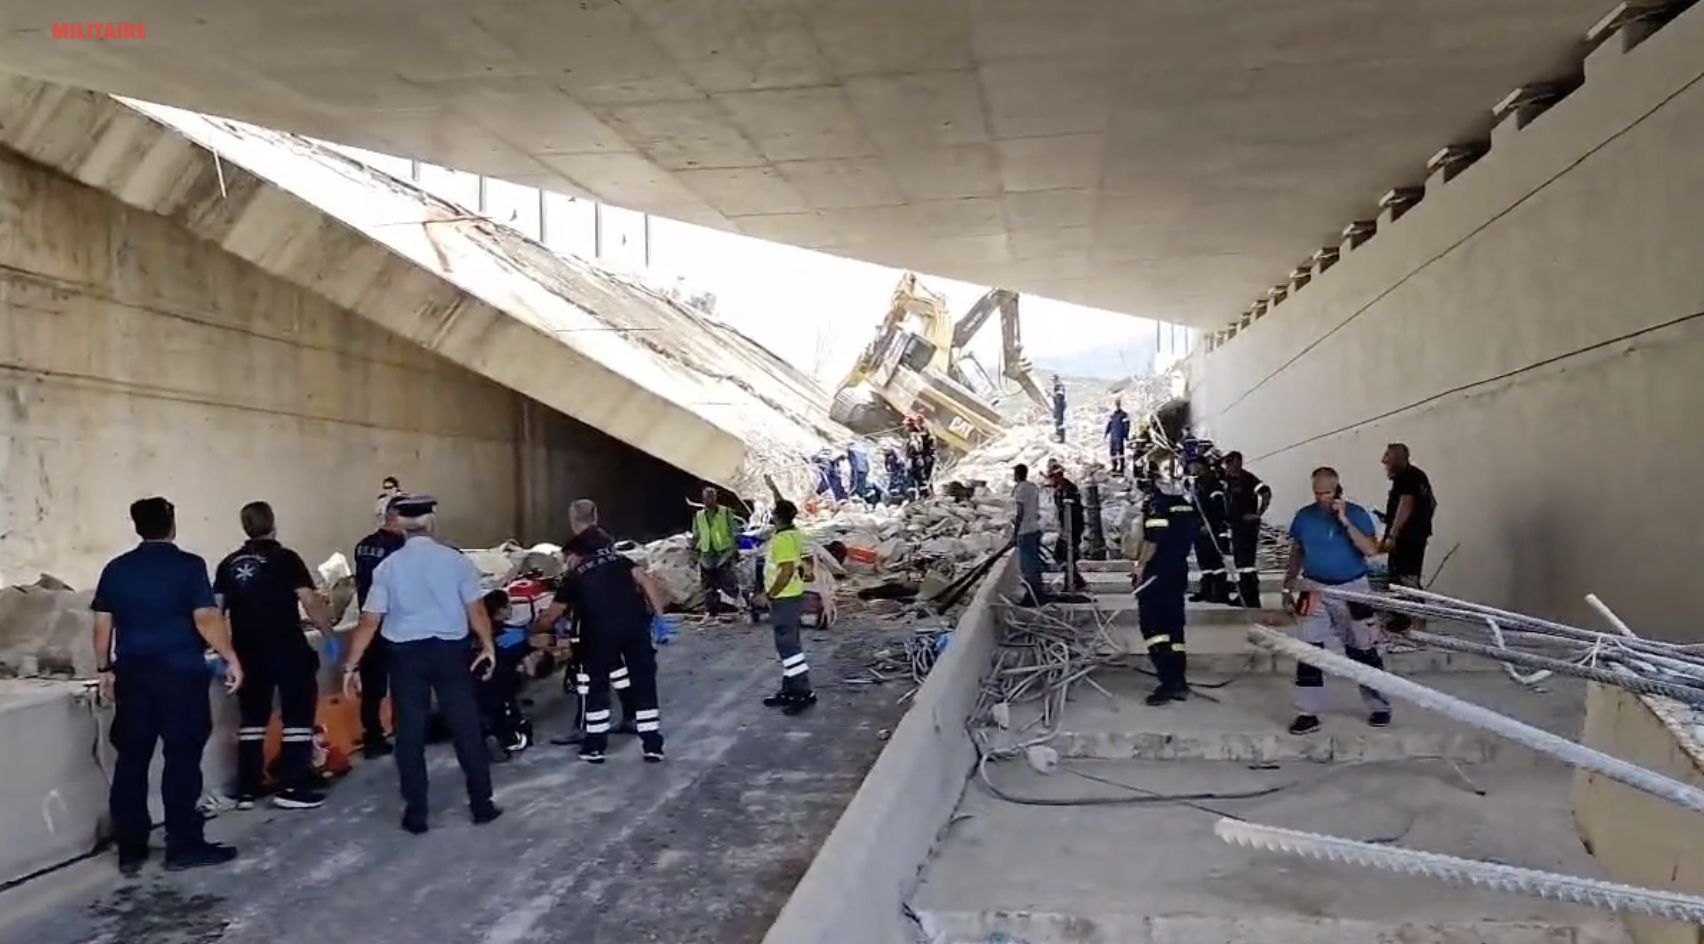 Πάτρα κατάρρευση γέφυρας: Ένας νεκρός κι ένας σοβαρά τραυματίας μέχρι στιγμής-Βίντεο